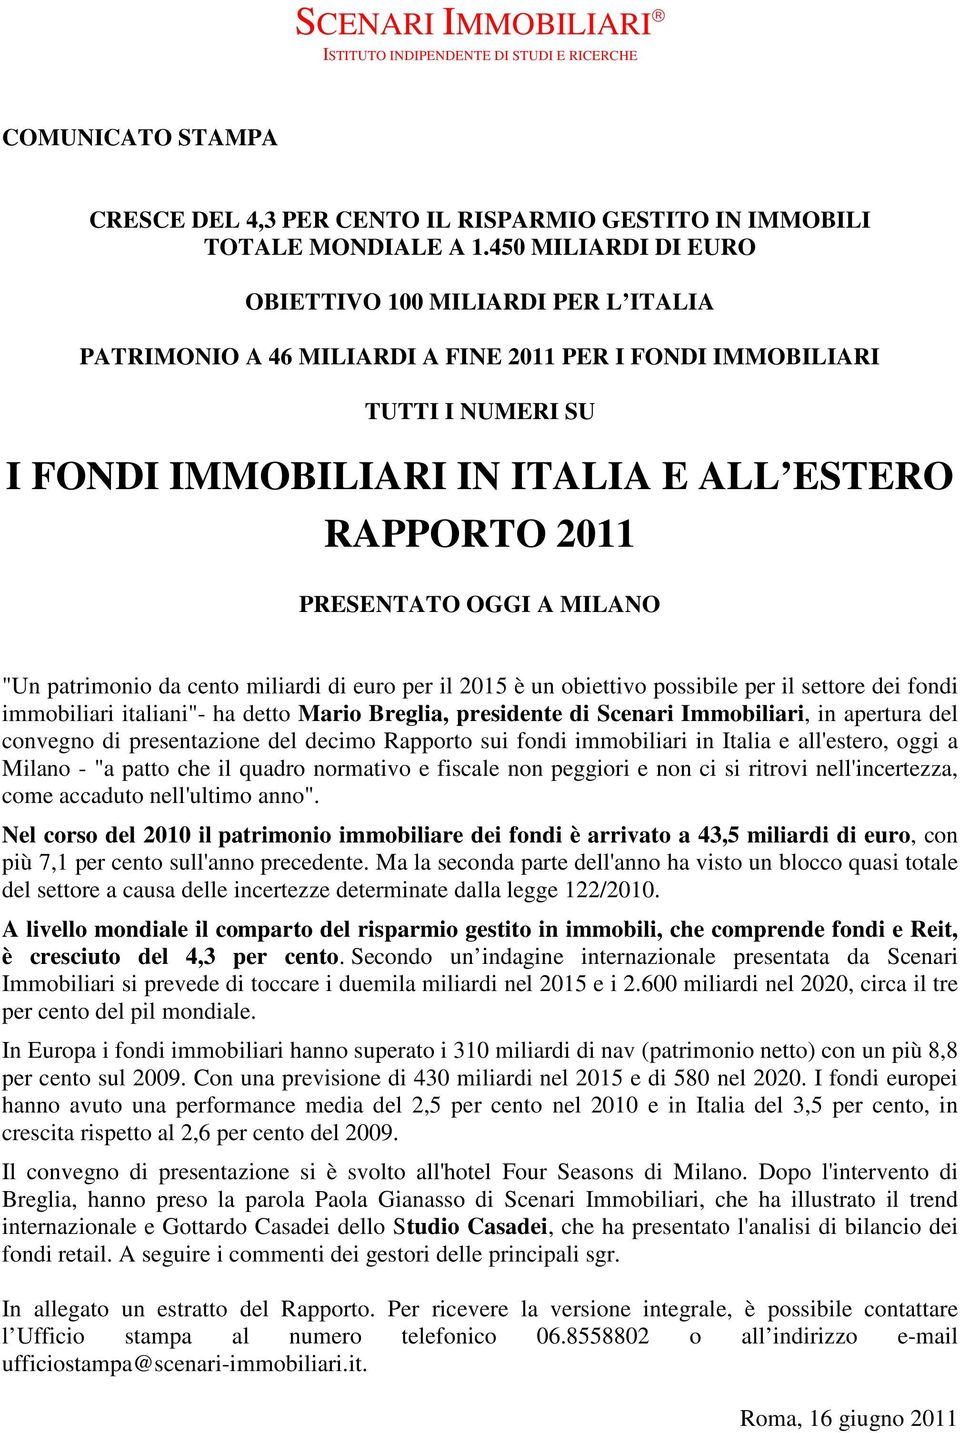 PRESENTATO OGGI A MILANO "Un patrimonio da cento miliardi di euro per il 2015 è un obiettivo possibile per il settore dei fondi immobiliari italiani"- ha detto Mario Breglia, presidente di Scenari